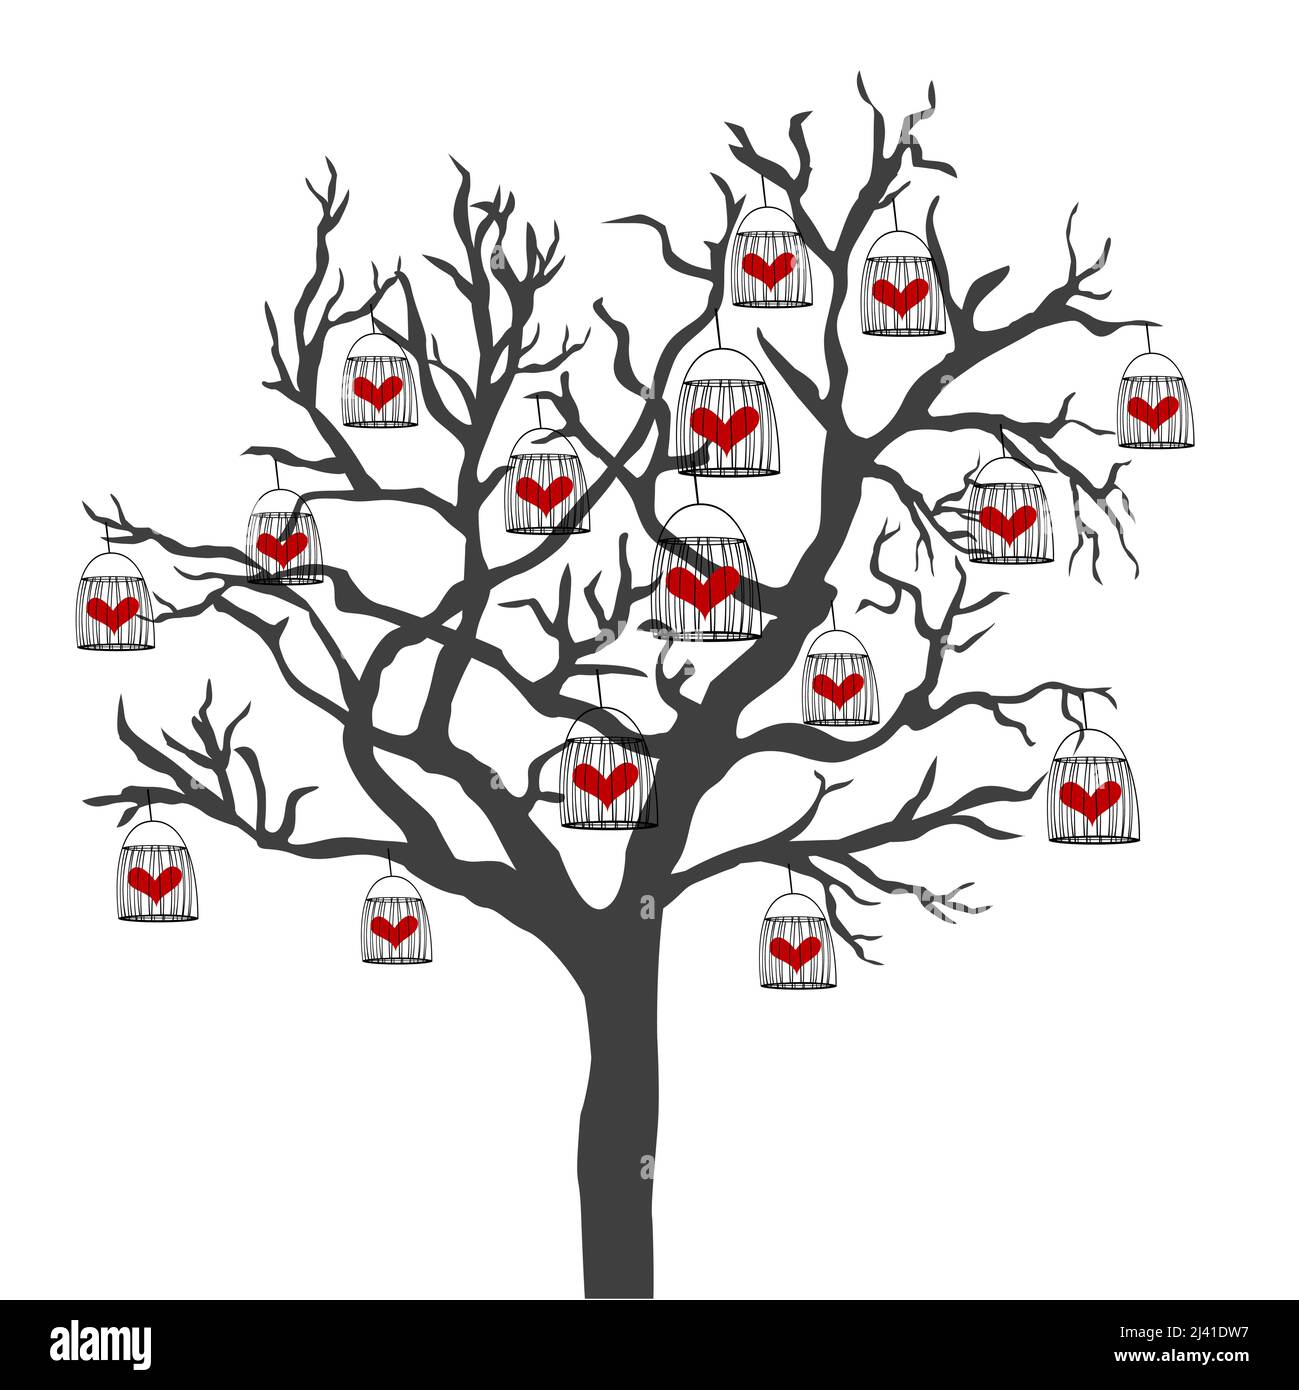 Illustrazione astratta di un albero con gabbie di uccelli che hanno il cuore chiuso in loro Illustrazione Vettoriale